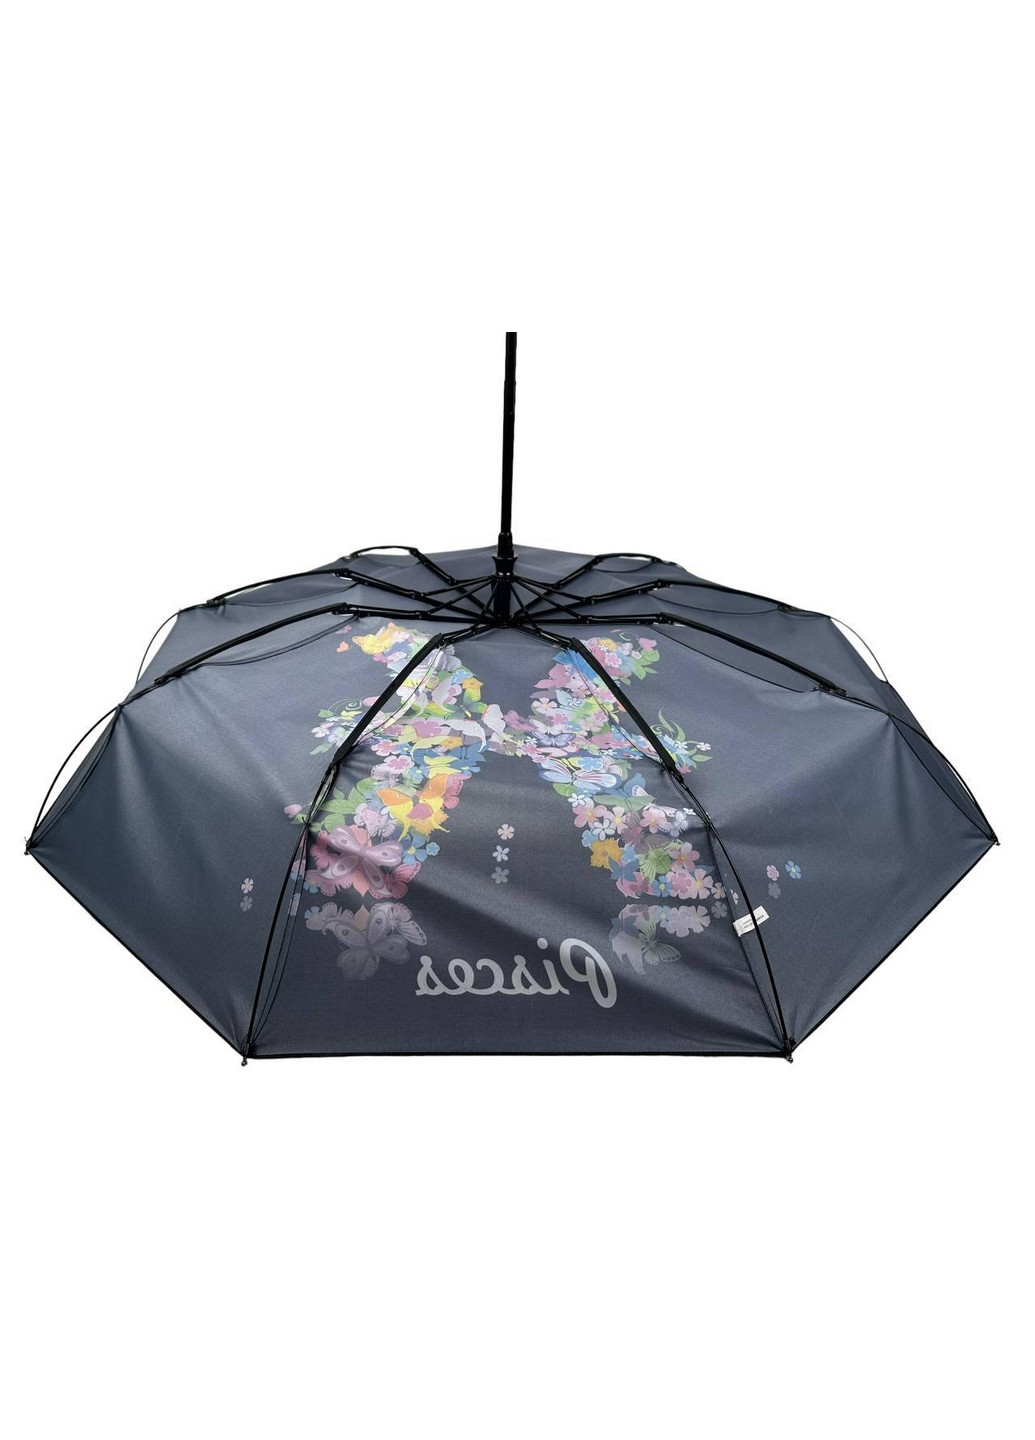 Женский зонт автомат Rain (276392396)